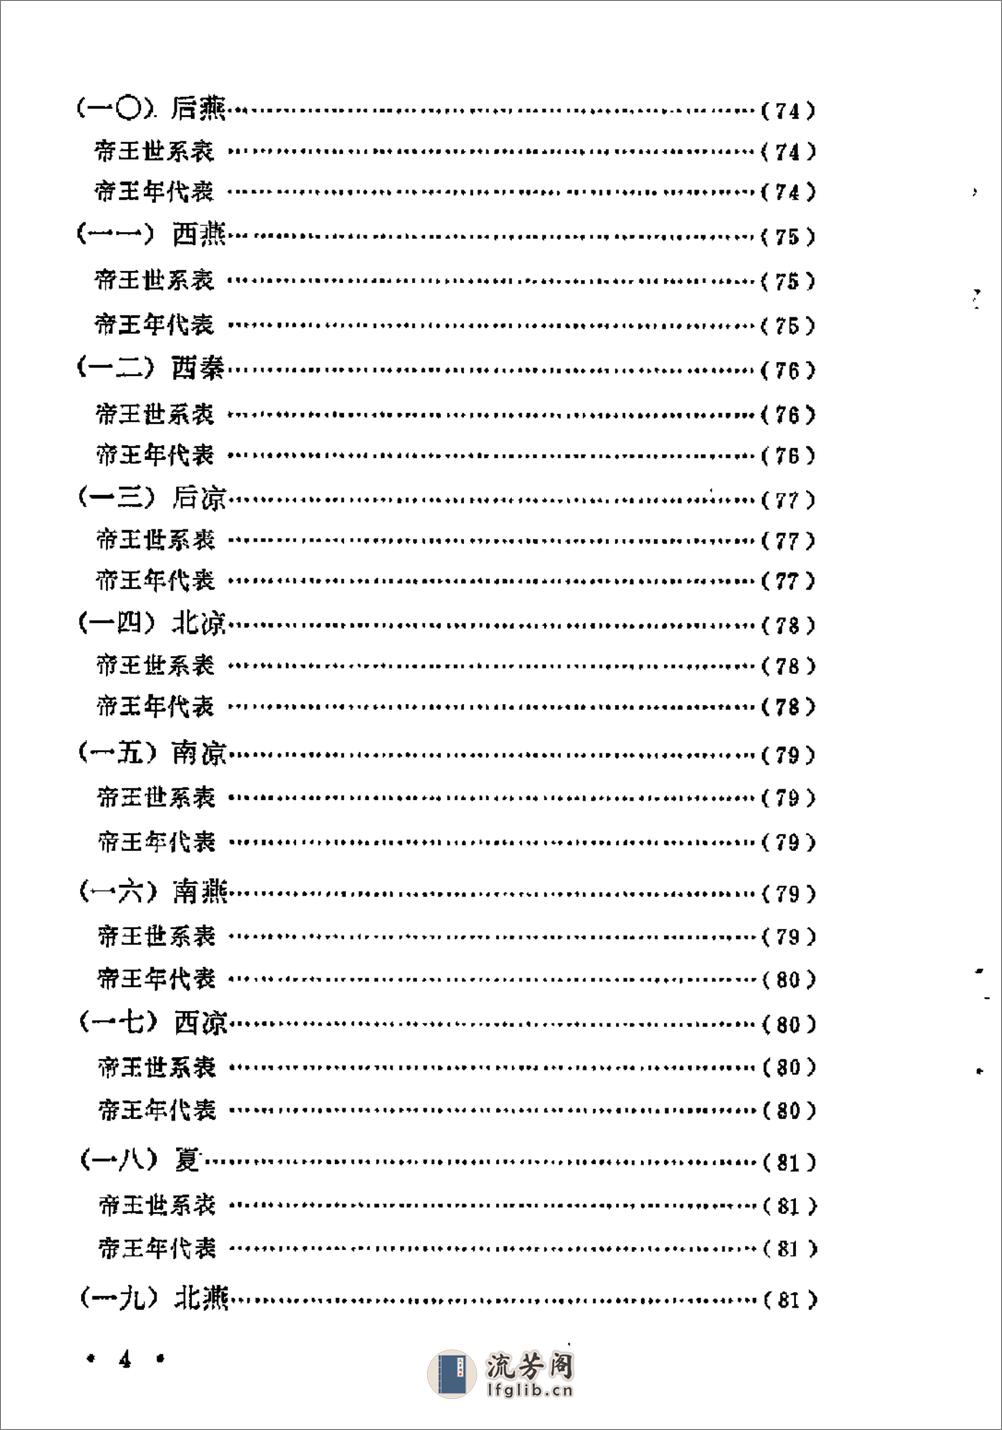 中国历史纪年简表·陈作良·中央党校1985 - 第7页预览图